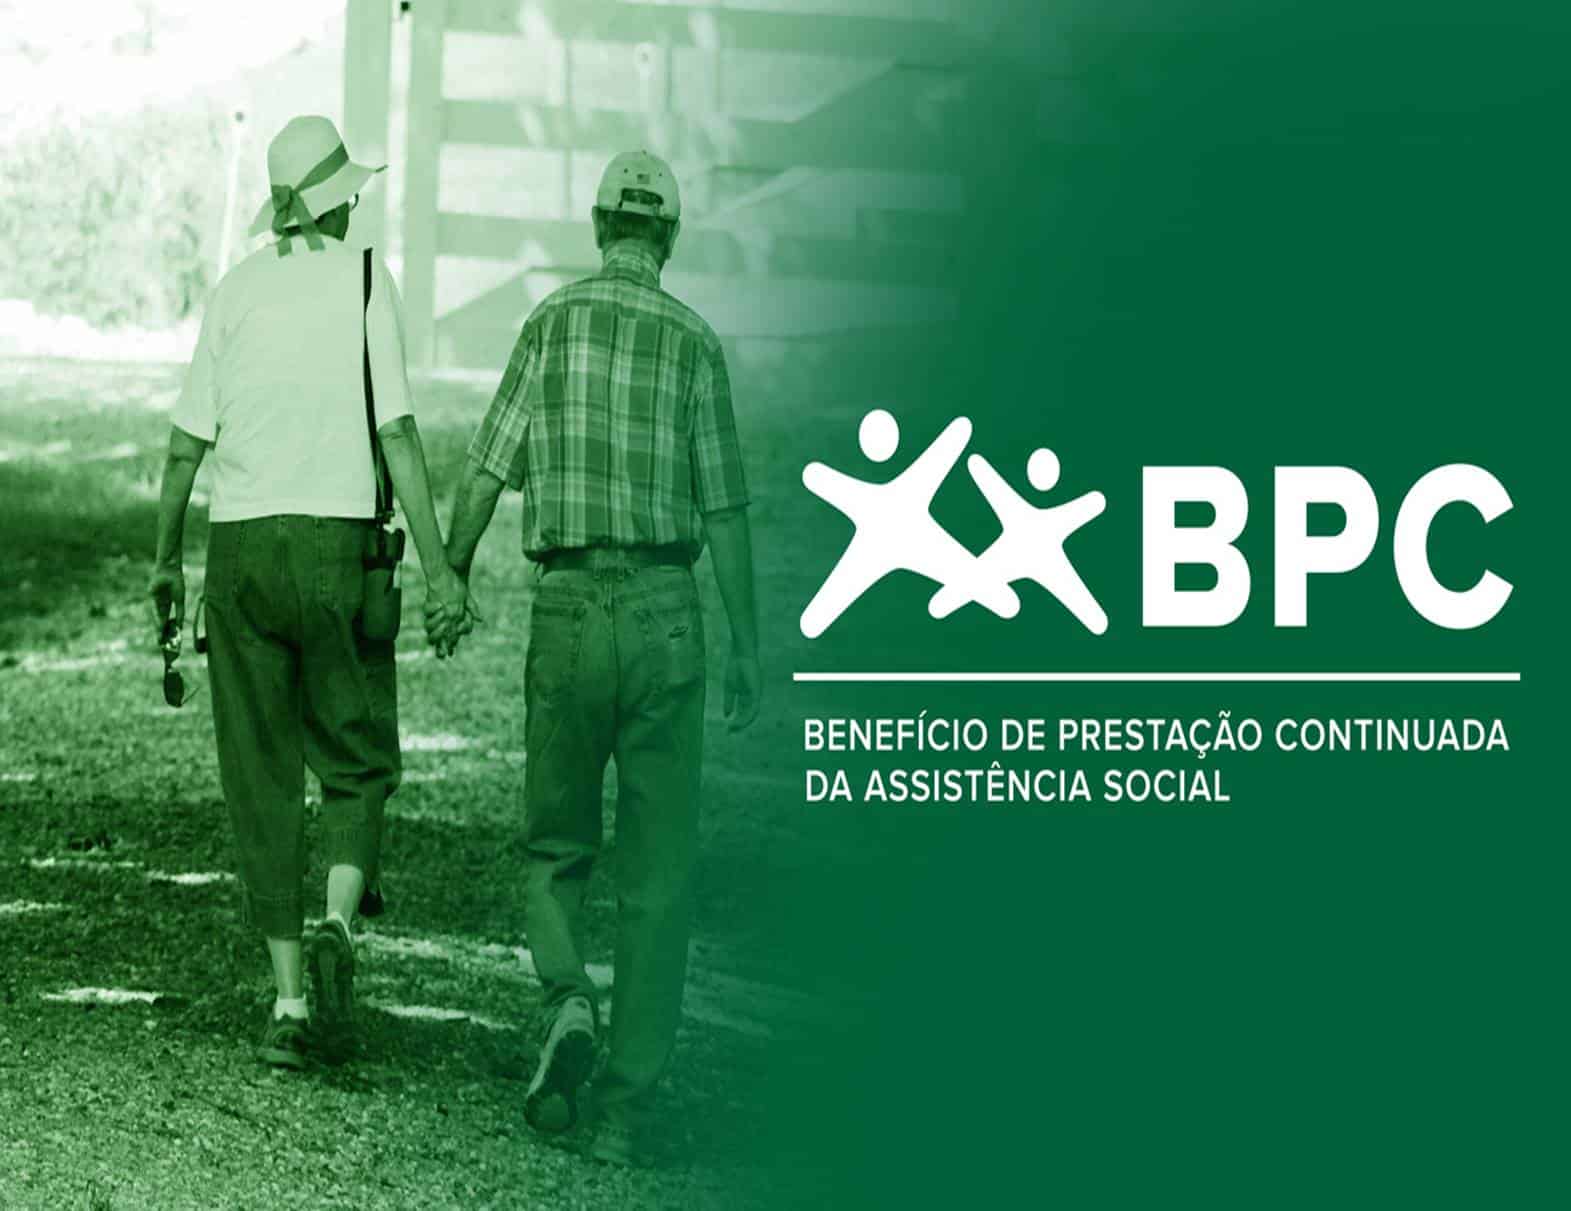 INSS começa notificar beneficiários do BPC em situação irregular no pente-fino